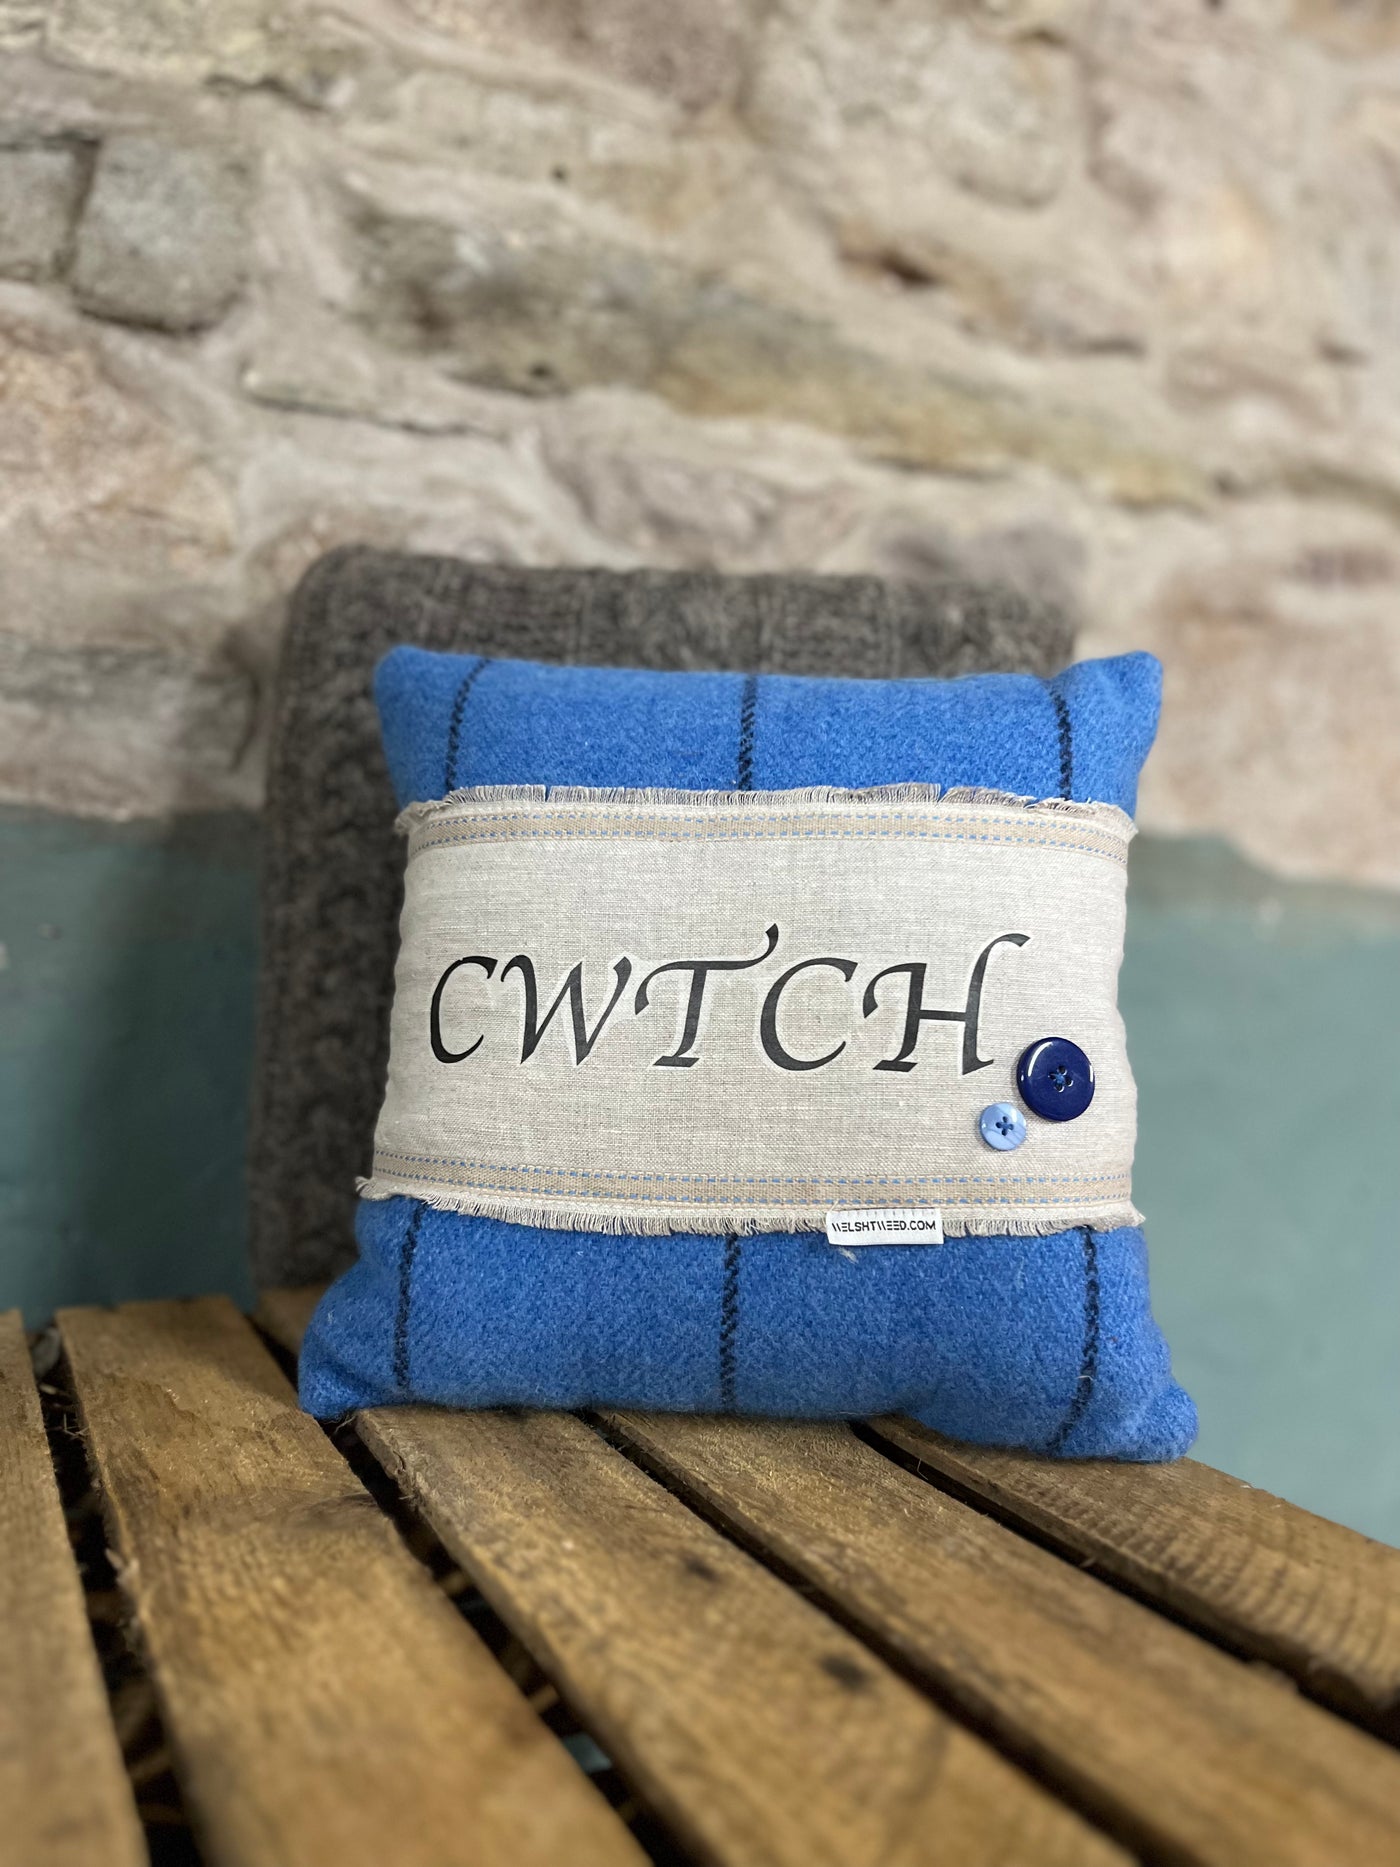 Striking Blue Cwtch Cushion